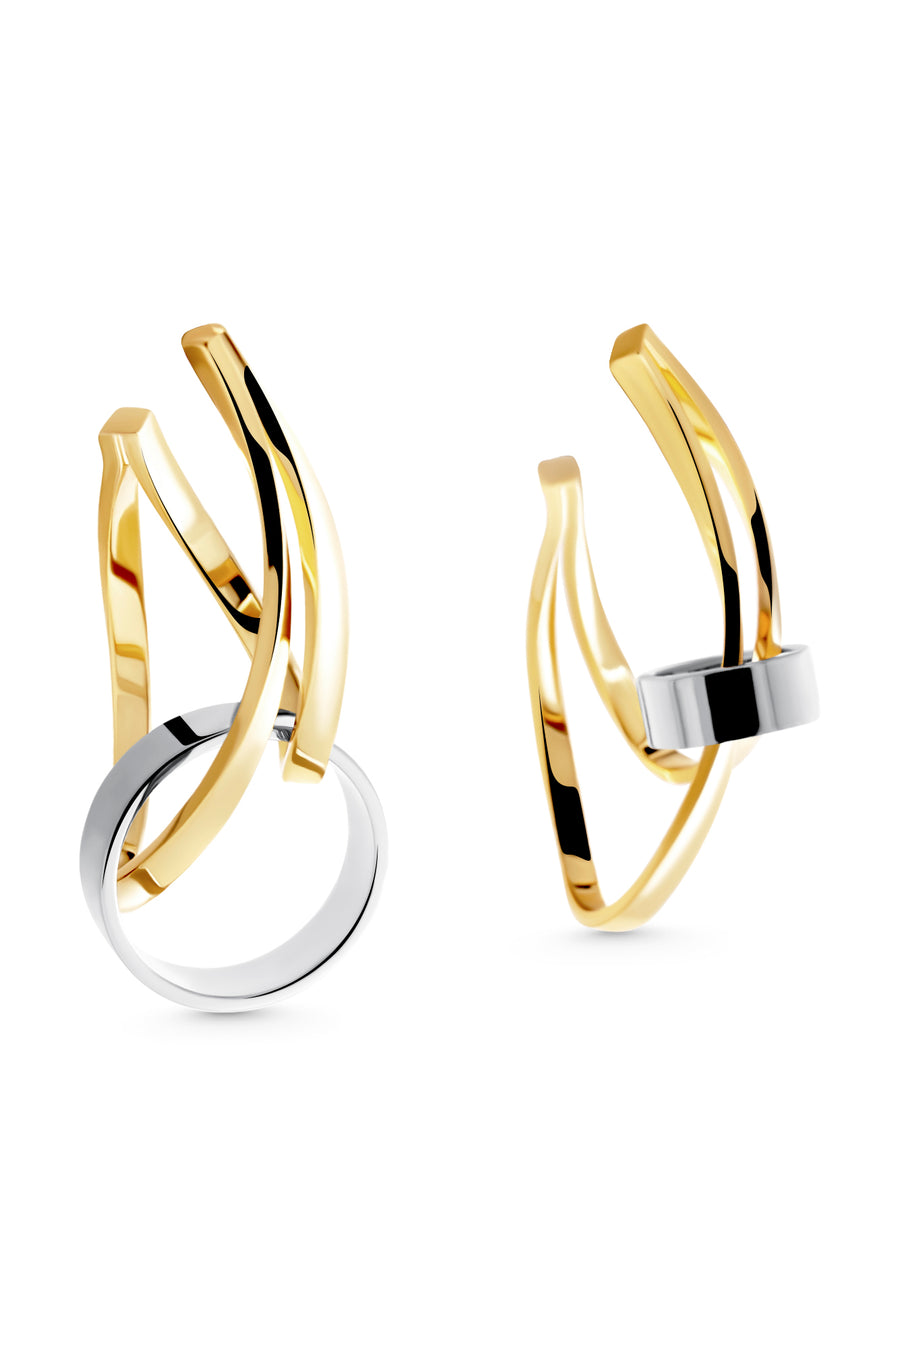 SOLCH HARMONY EARRINGS Double-toned asymmetrical hoops earrings in 18K gold vermeil